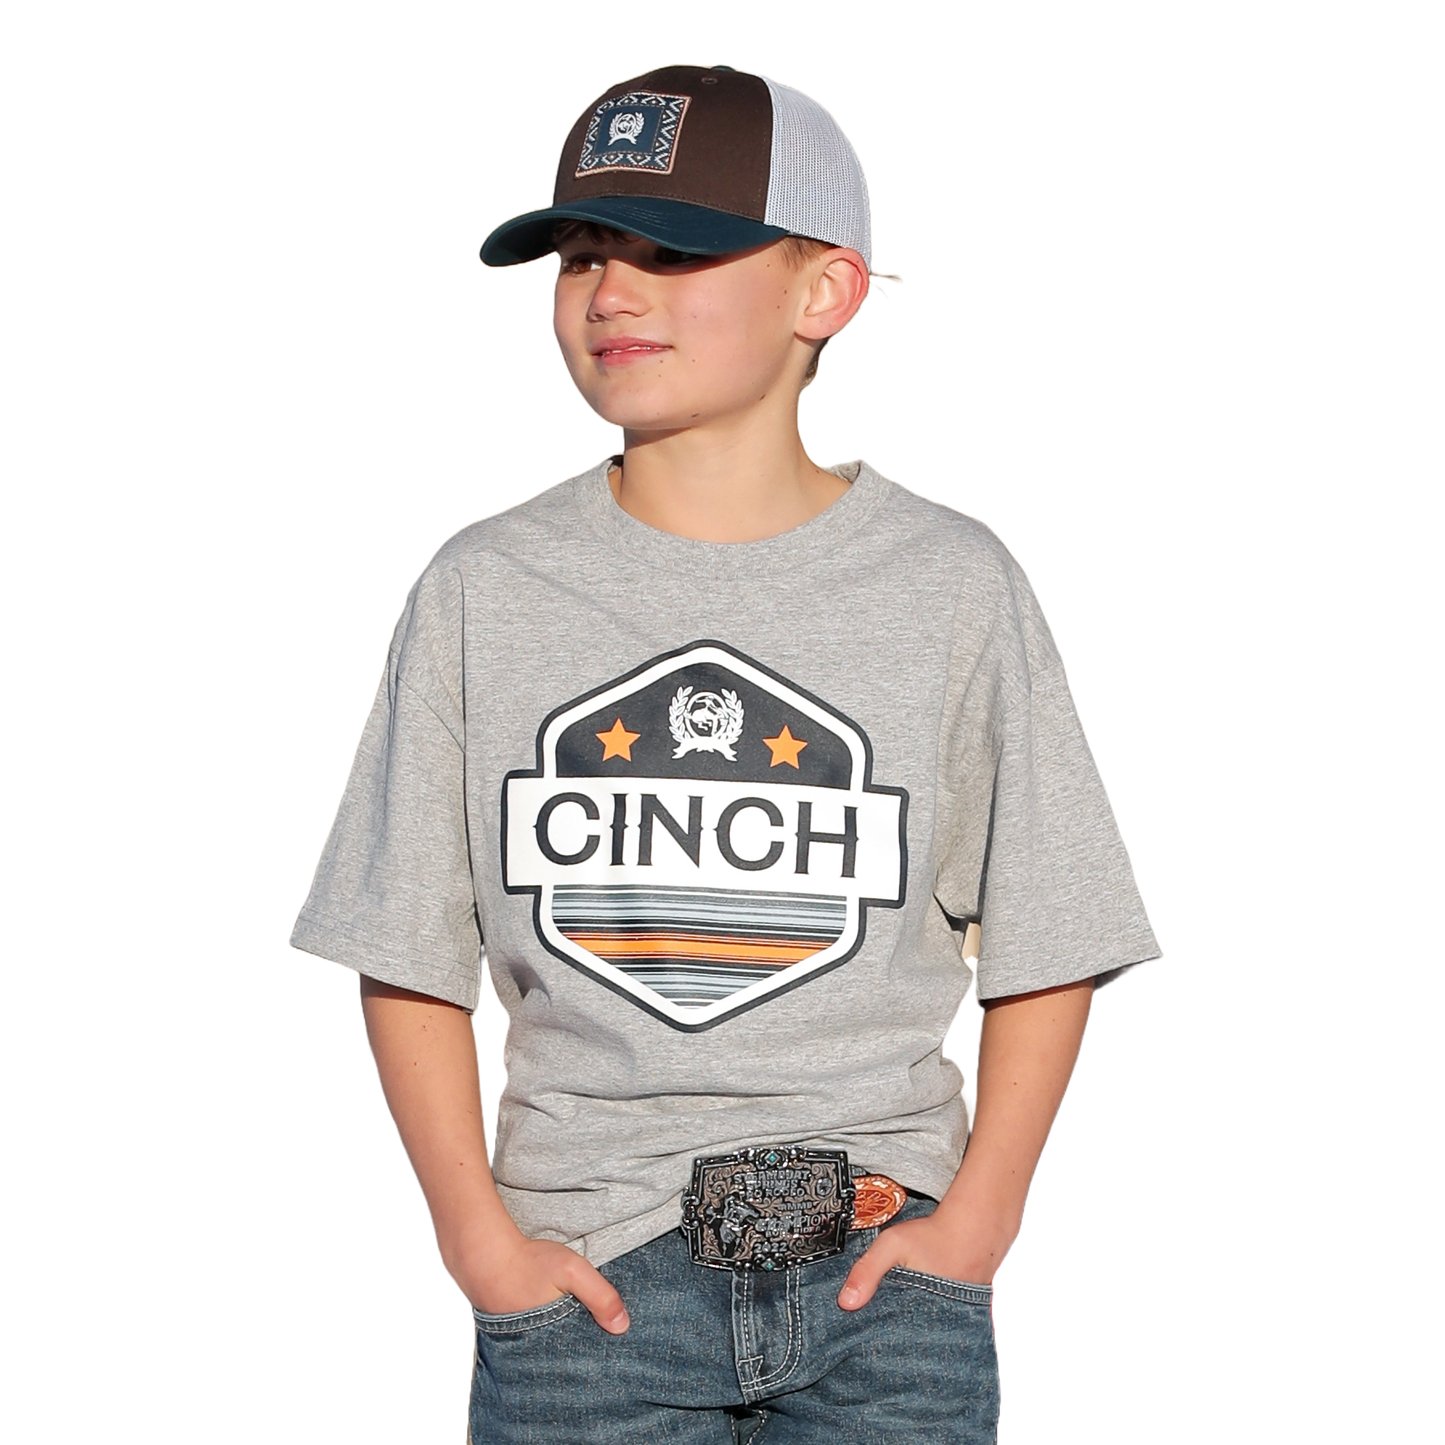 Cinch Youth Boy's Heather Grey Logo Graphic T-Shirt MTT7670139